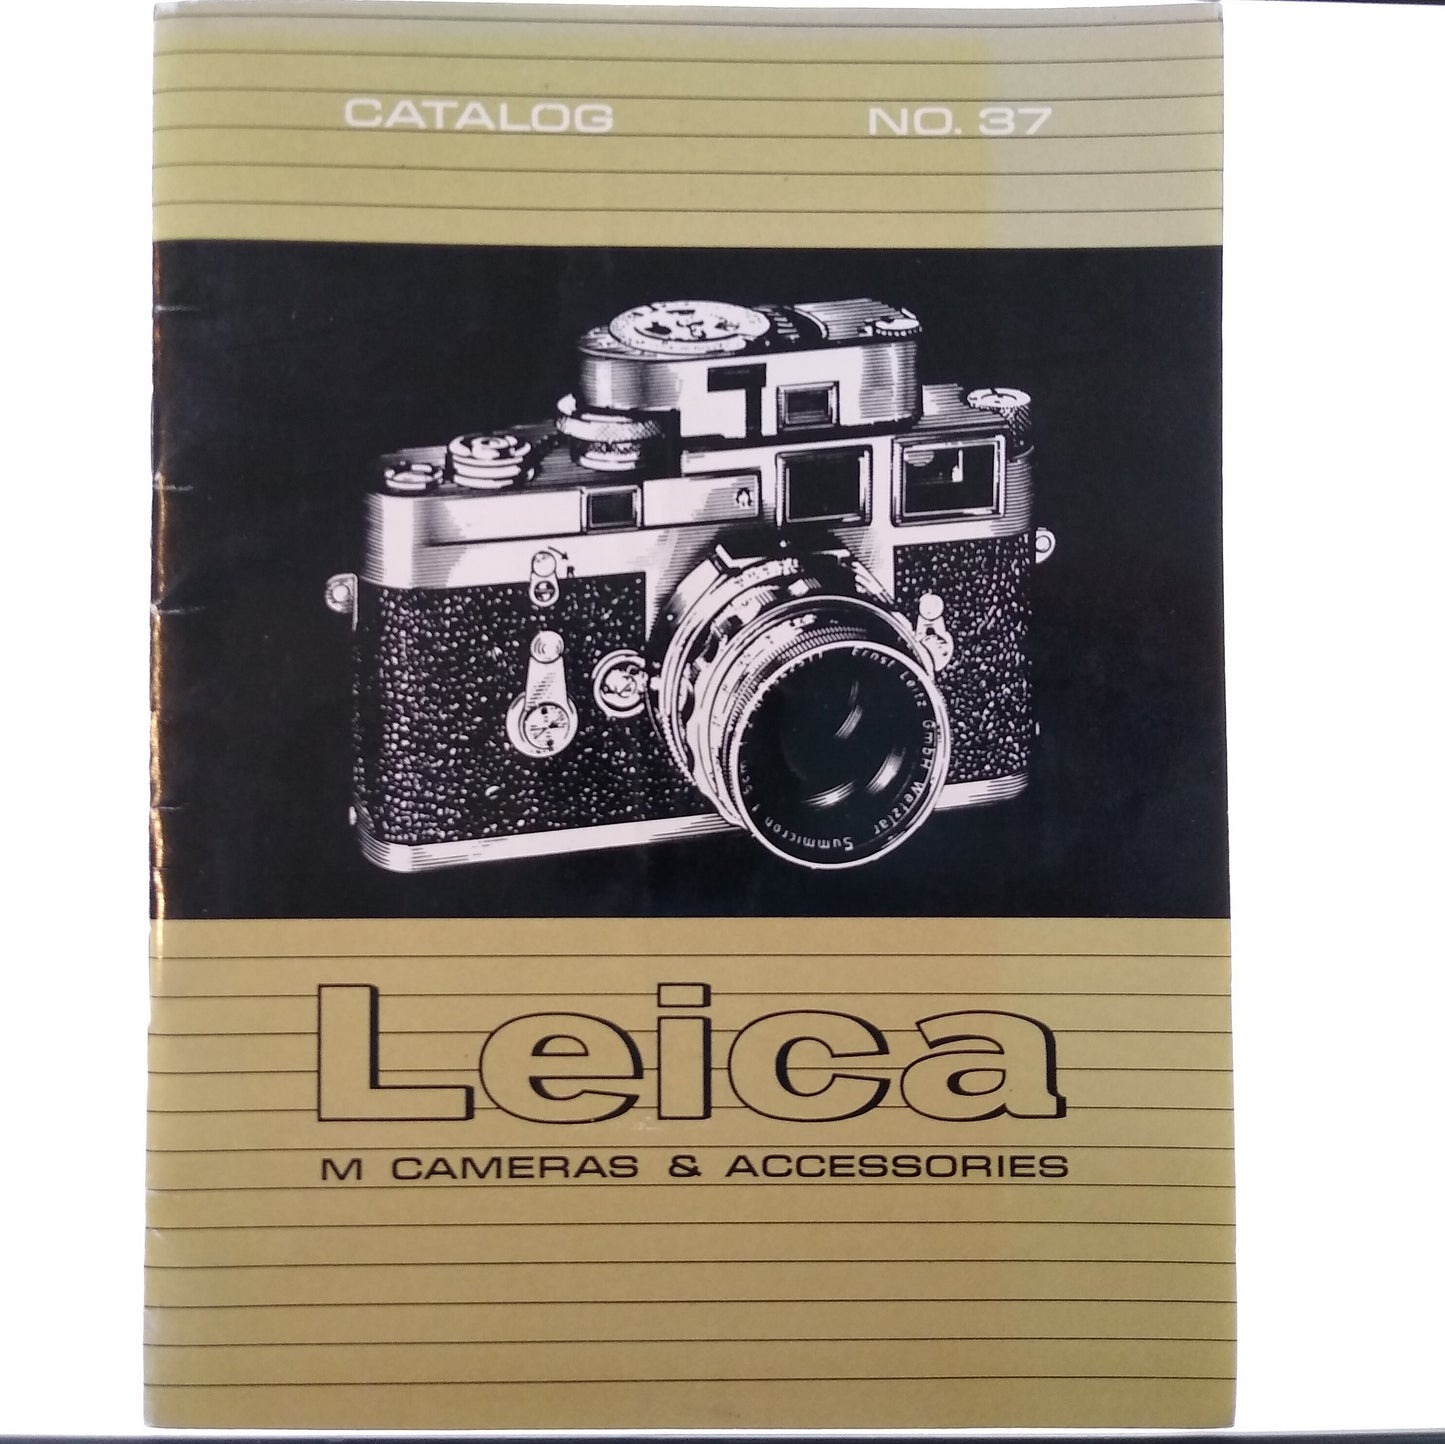 Leica M Cameras & Accessories Catalog no. 37.